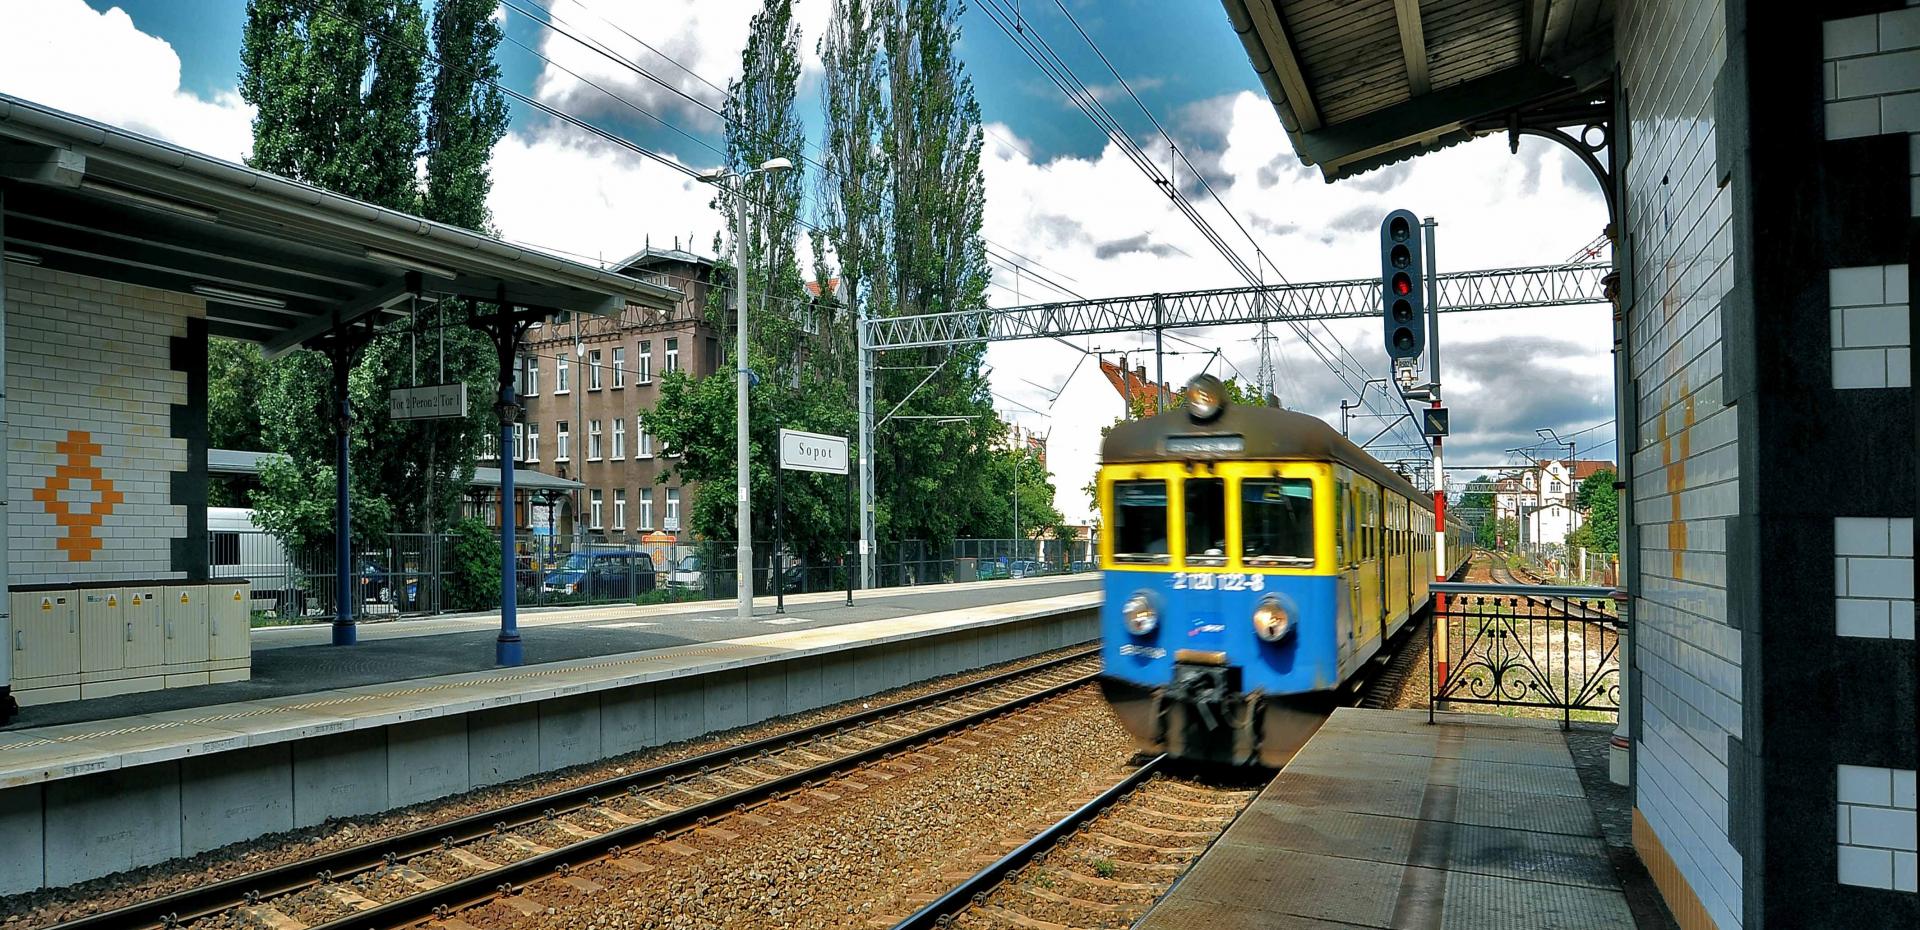 Stazione Sopot - Danzica - Polonia